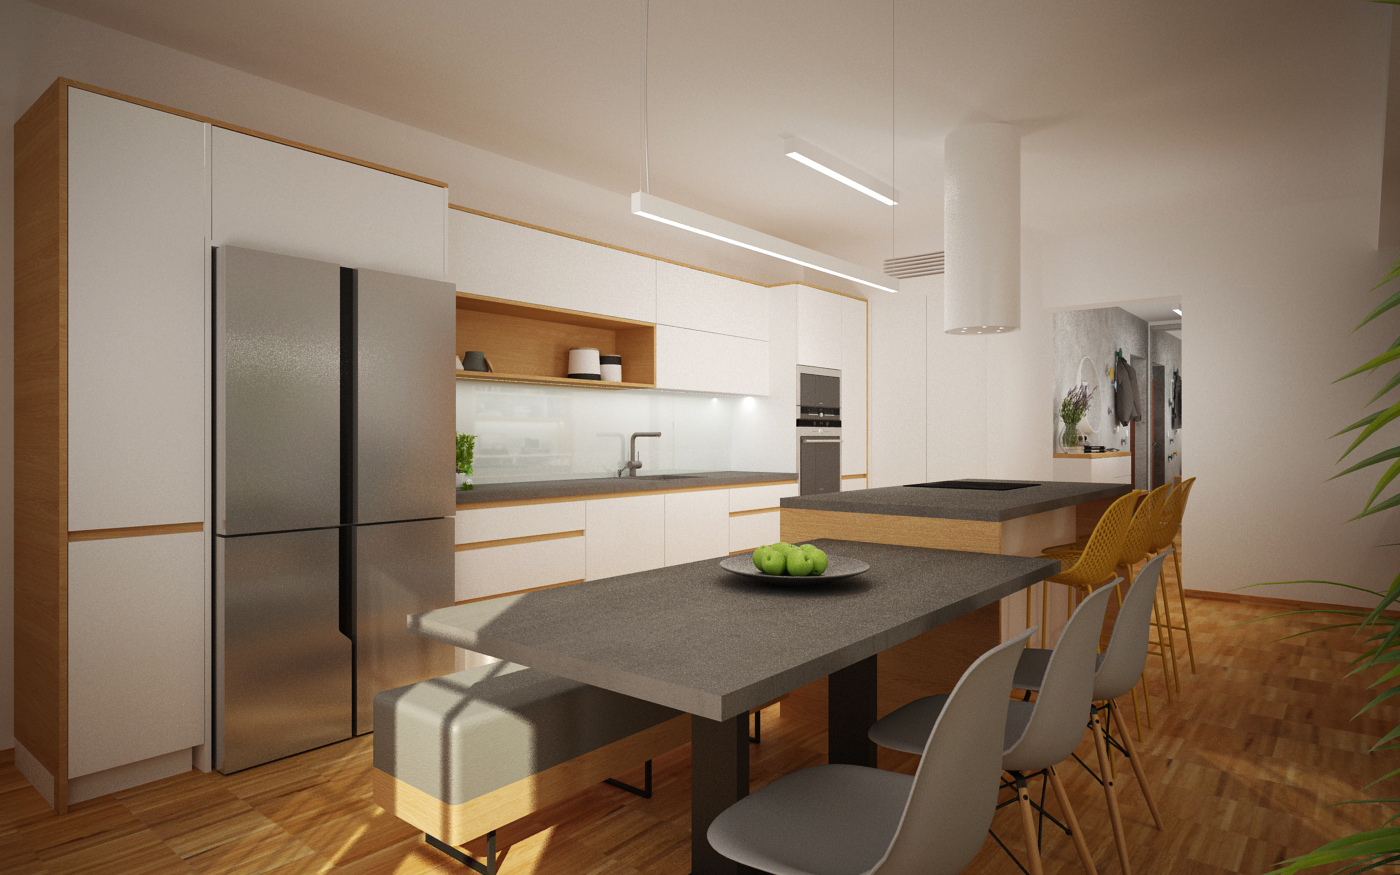 Obývací pokoj s kuchyní kombinace dřeva, šedé a bílé